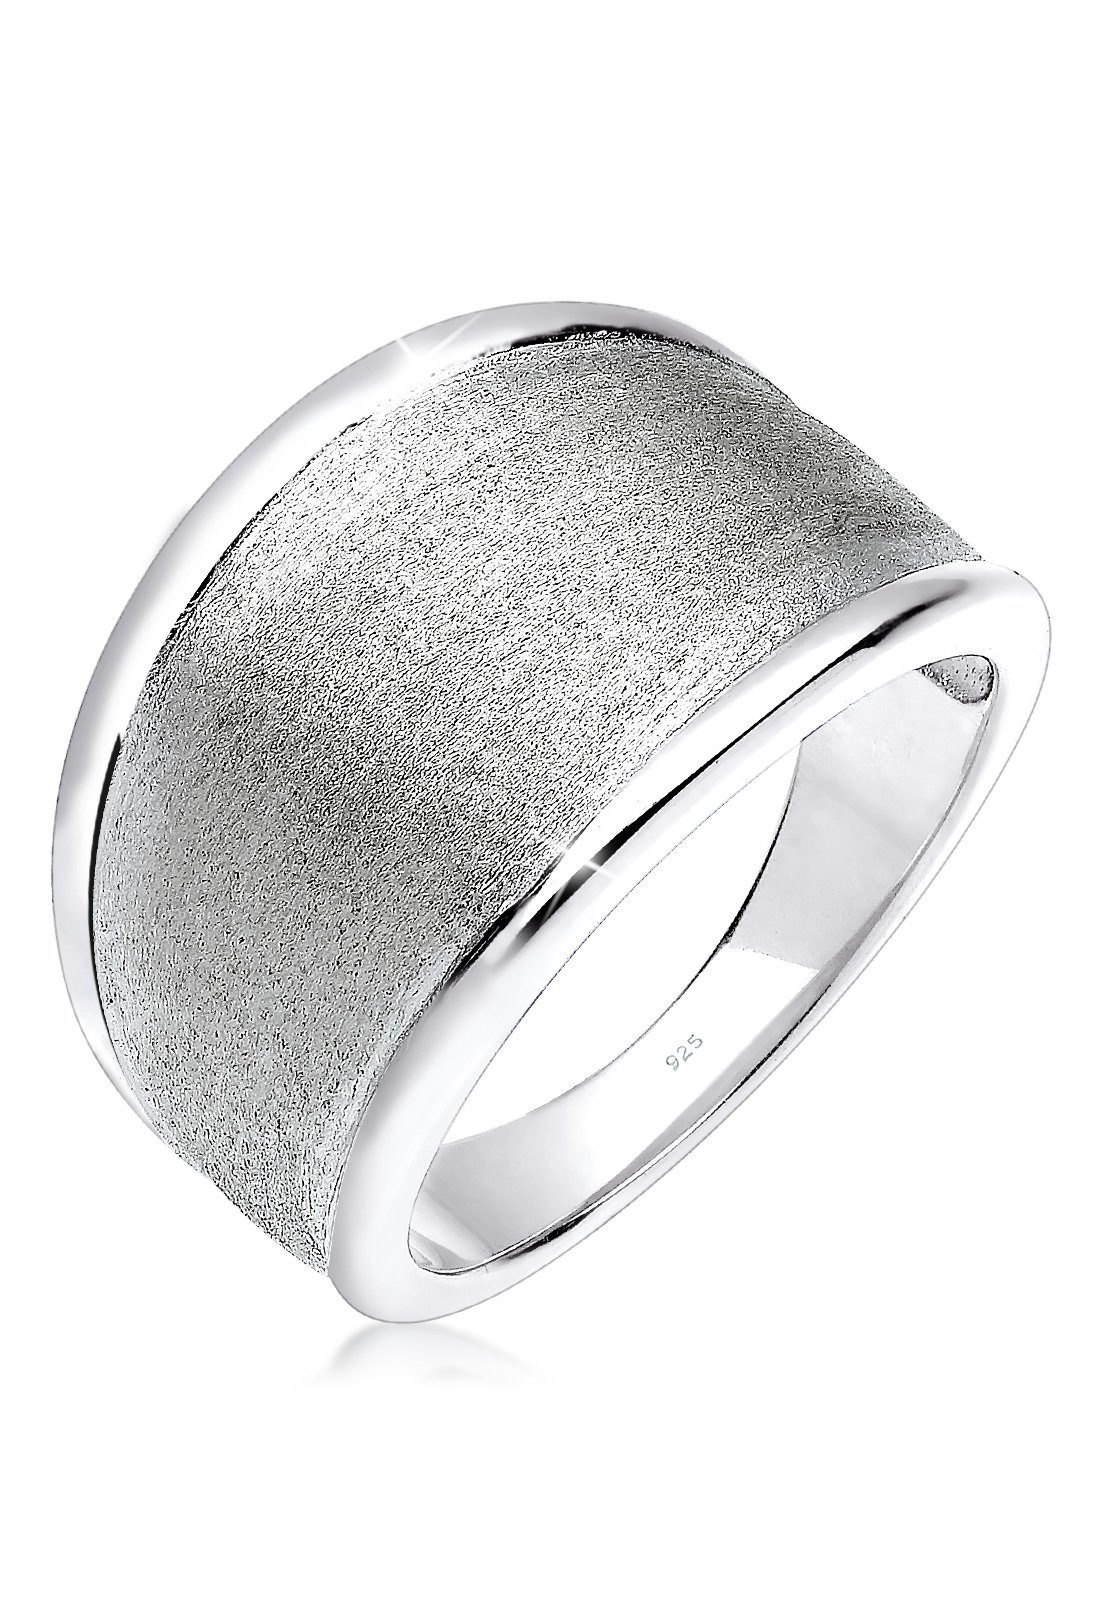 Elli Fingerring »Basic Matt Trend Silber 925 Sterling Silber«, Bandring  online kaufen | OTTO